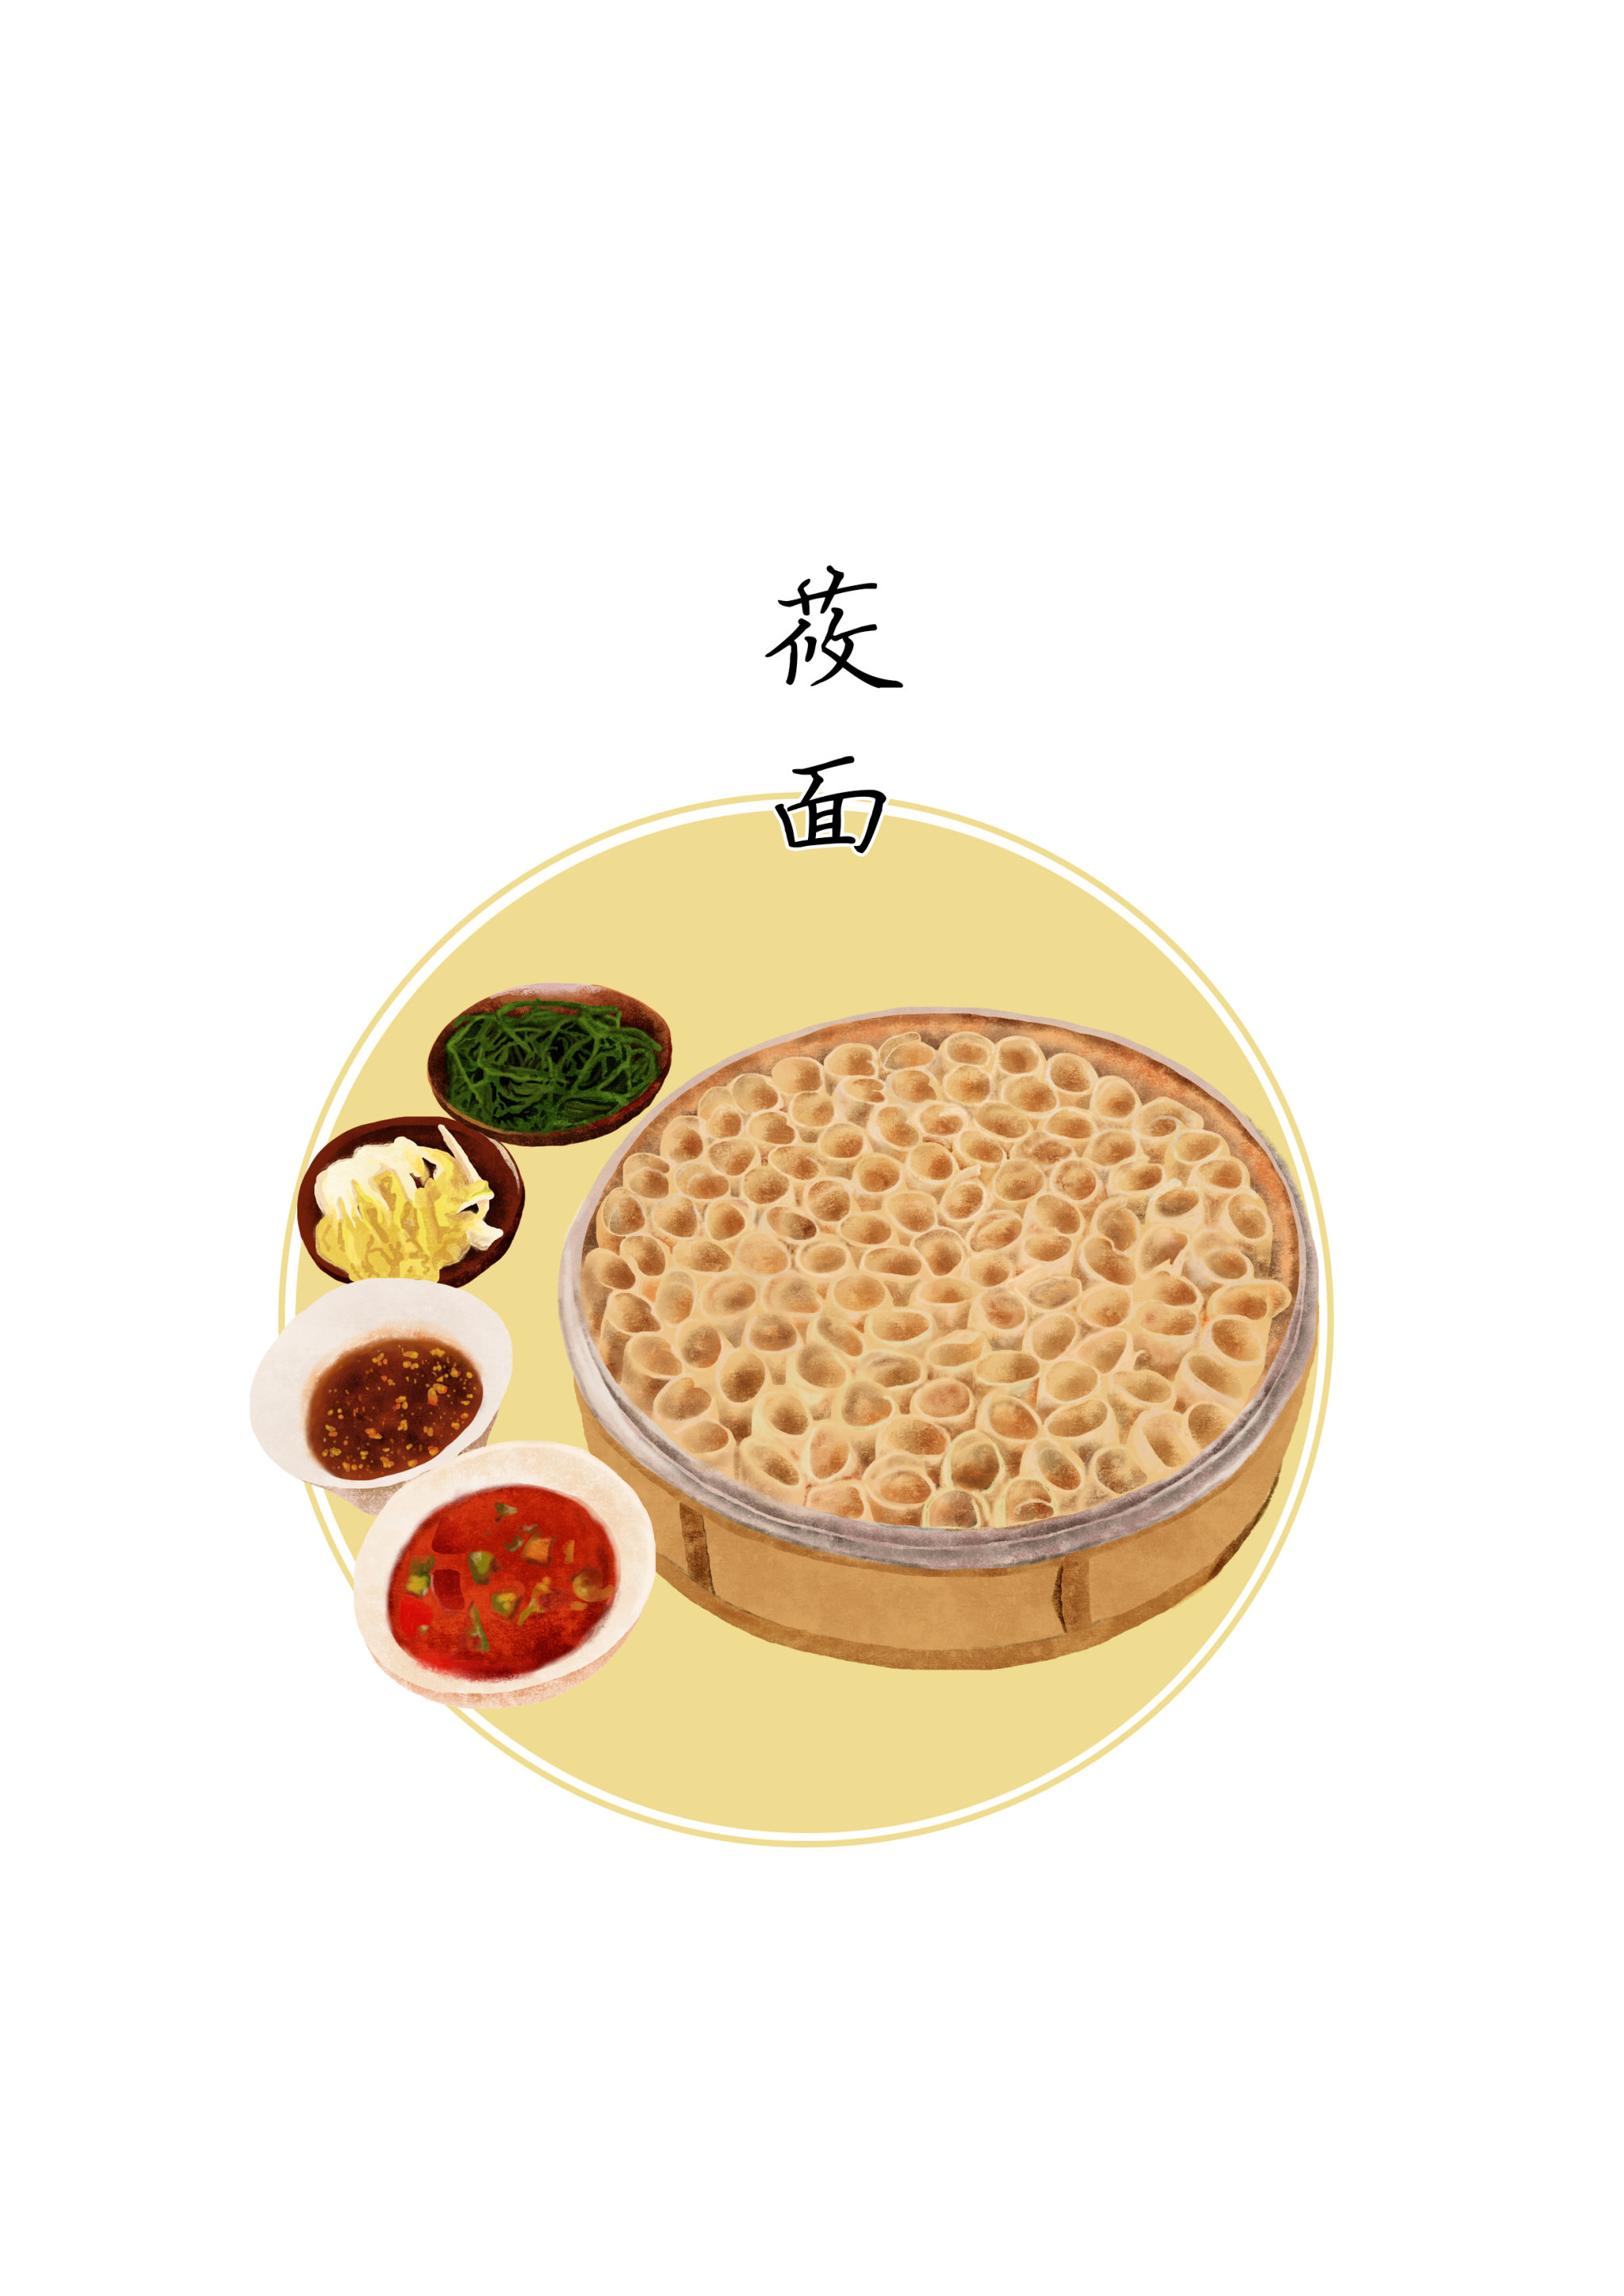 蒙古族食物简笔画图片